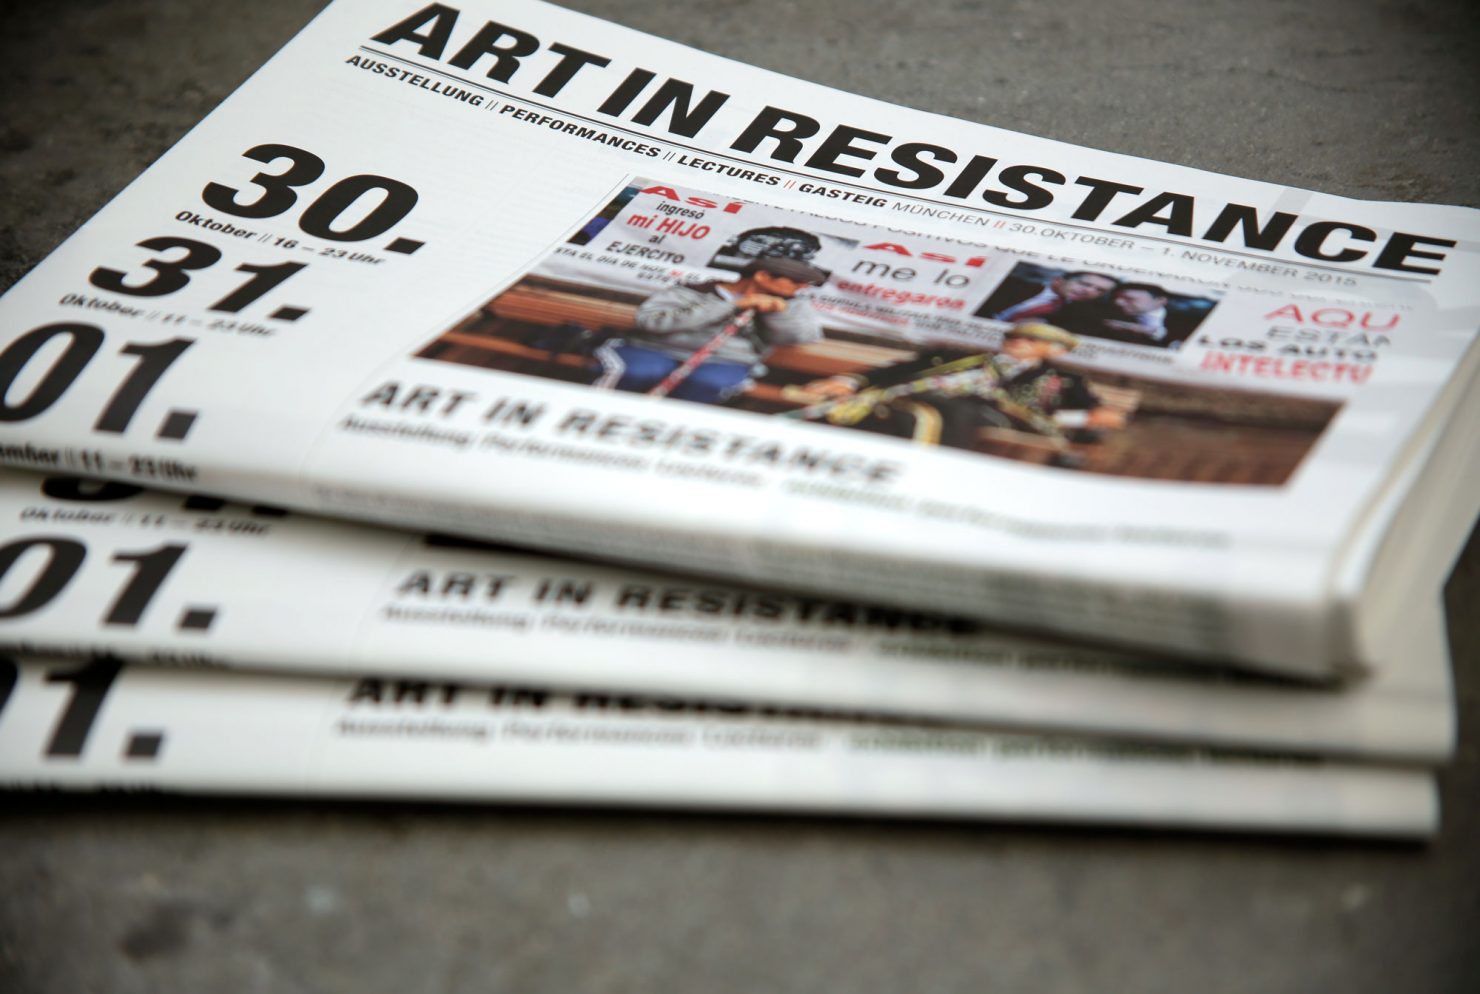 Programmzeitung Art in Resistance spielart theaterfestival München 2015